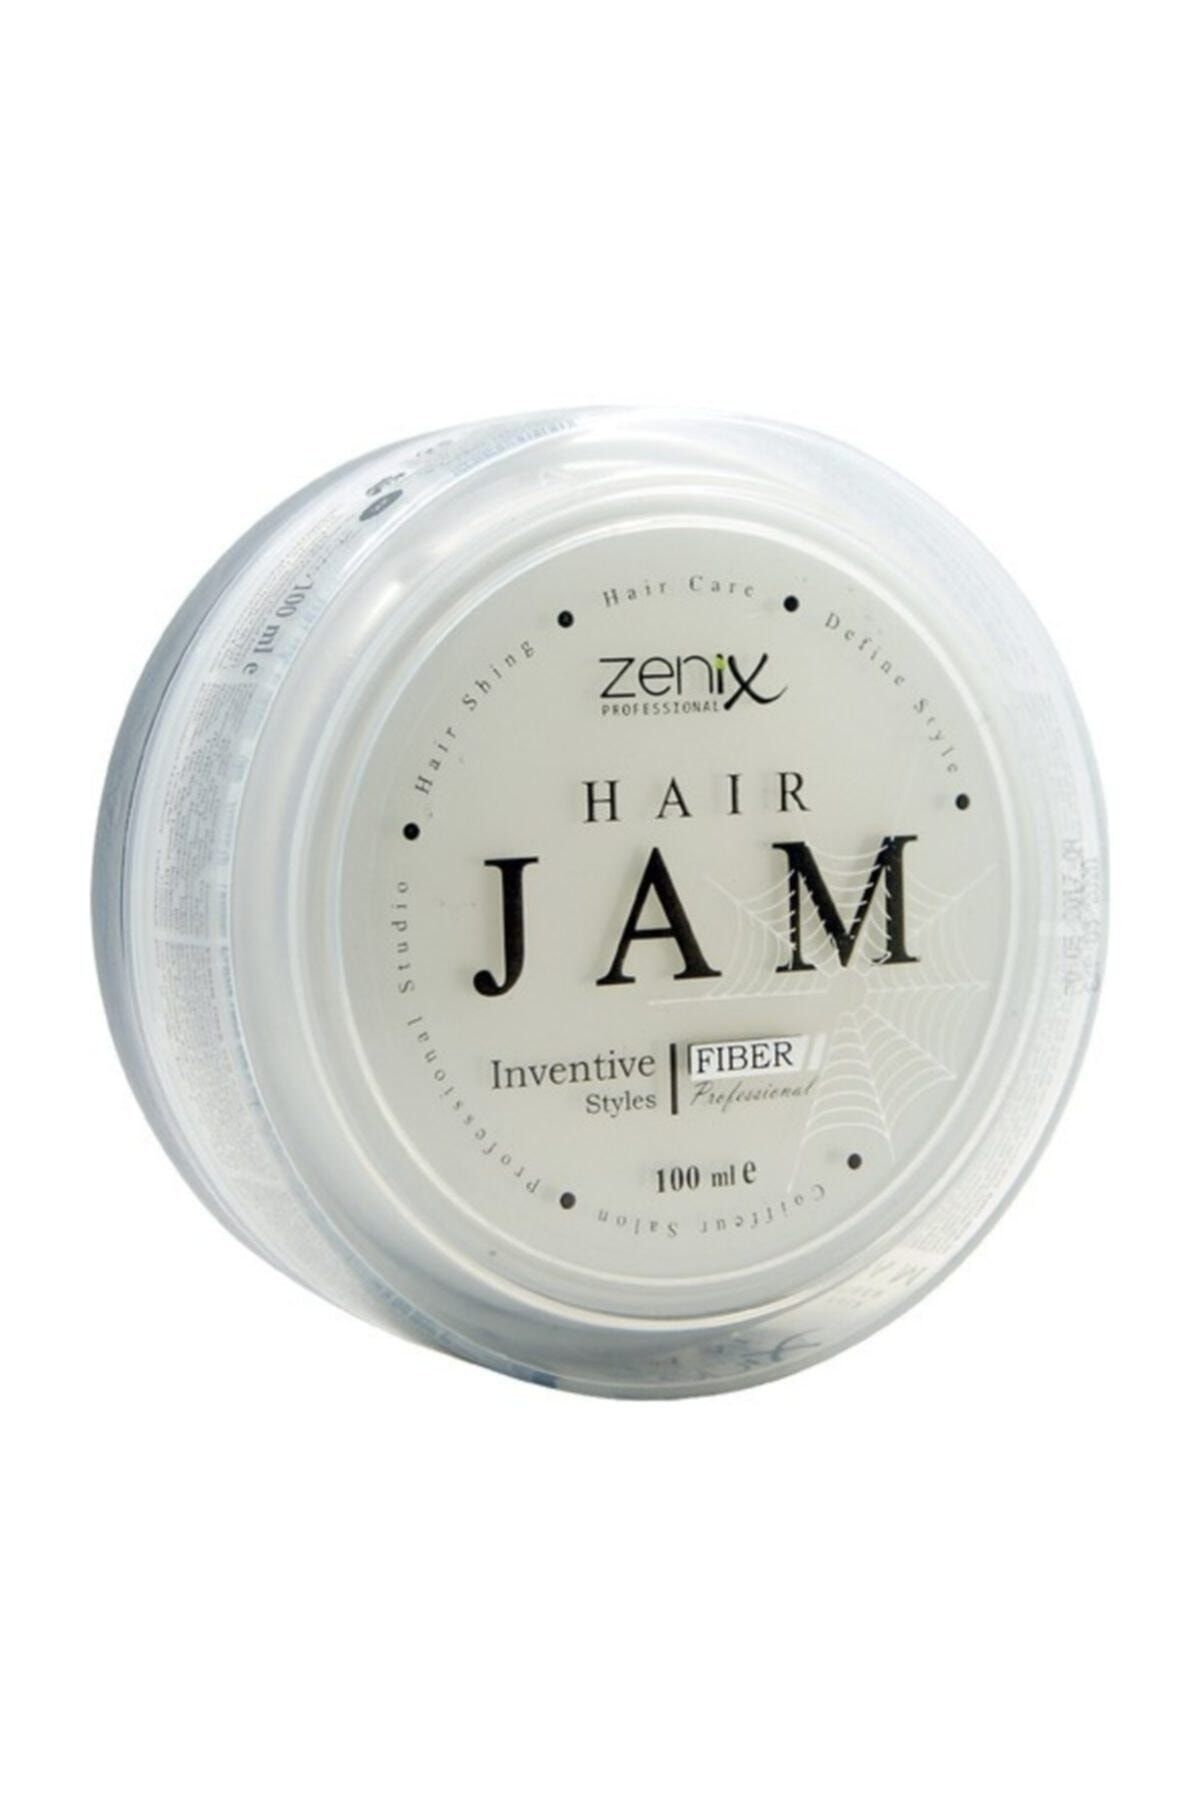 Zenix Hair Jam Fiber Örümcek Ağı Wax 100 ml